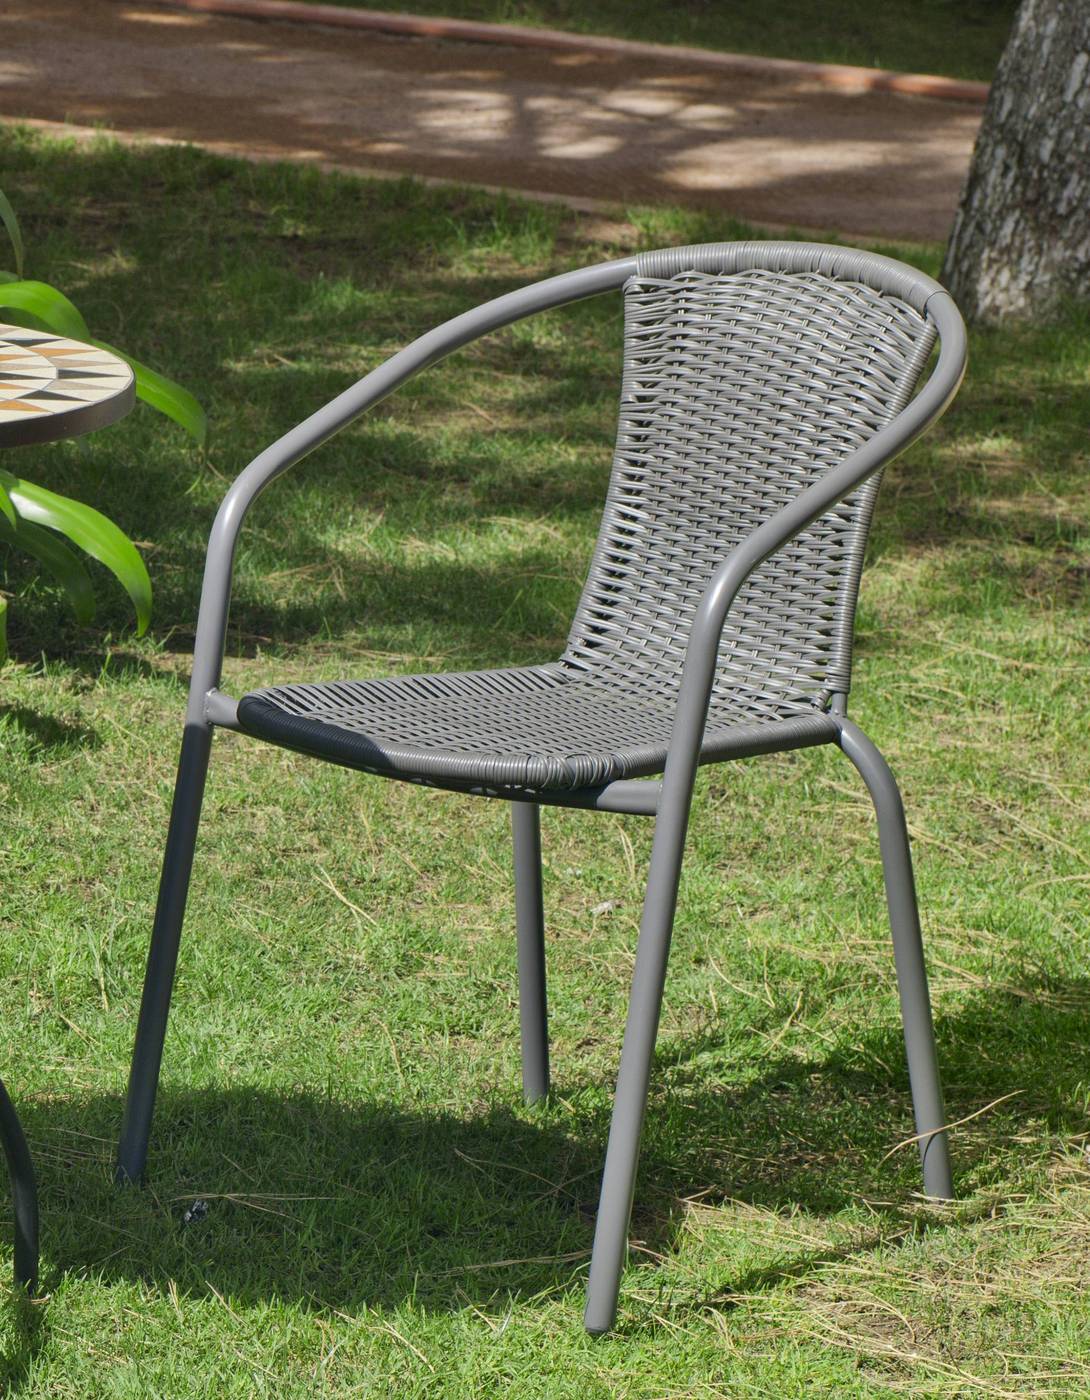 Set Acero Santana-90 - Conjunto de acero color antracita: mesa redonda con tablero de cristal templado de 90 cm. + 4 sillones apilables de wicker reforzado